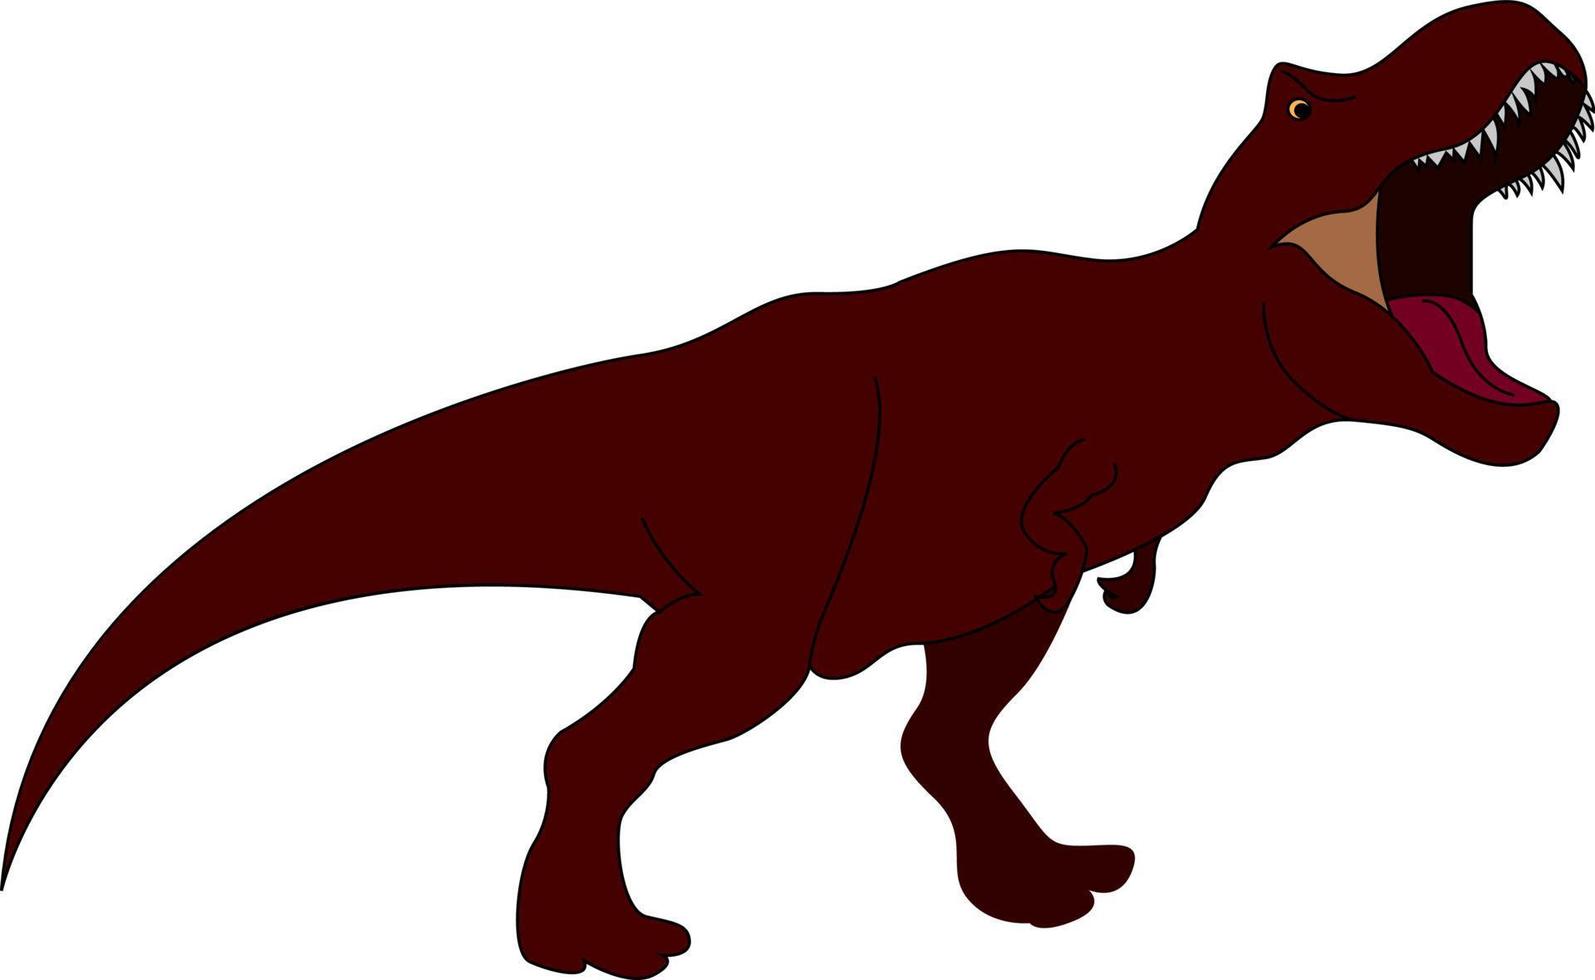 Carnotaurus yelling, illustration, vector on white background.